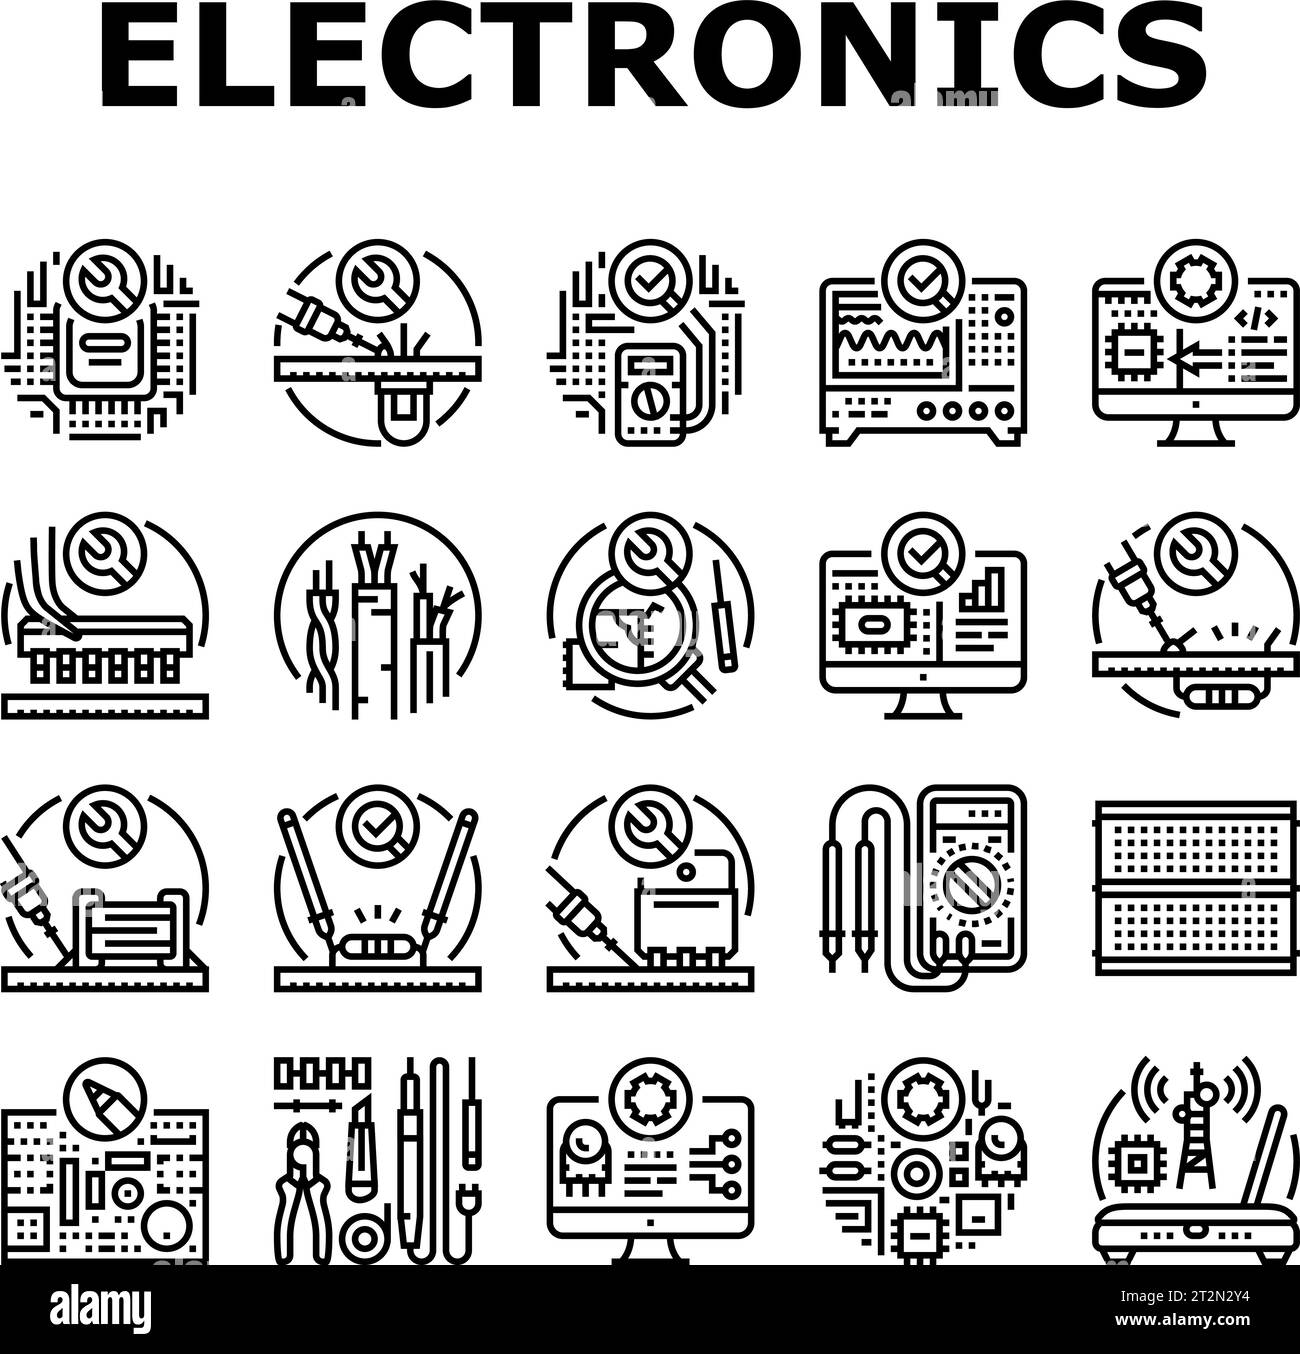 Soldar electronica Imágenes de stock en blanco y negro - Alamy